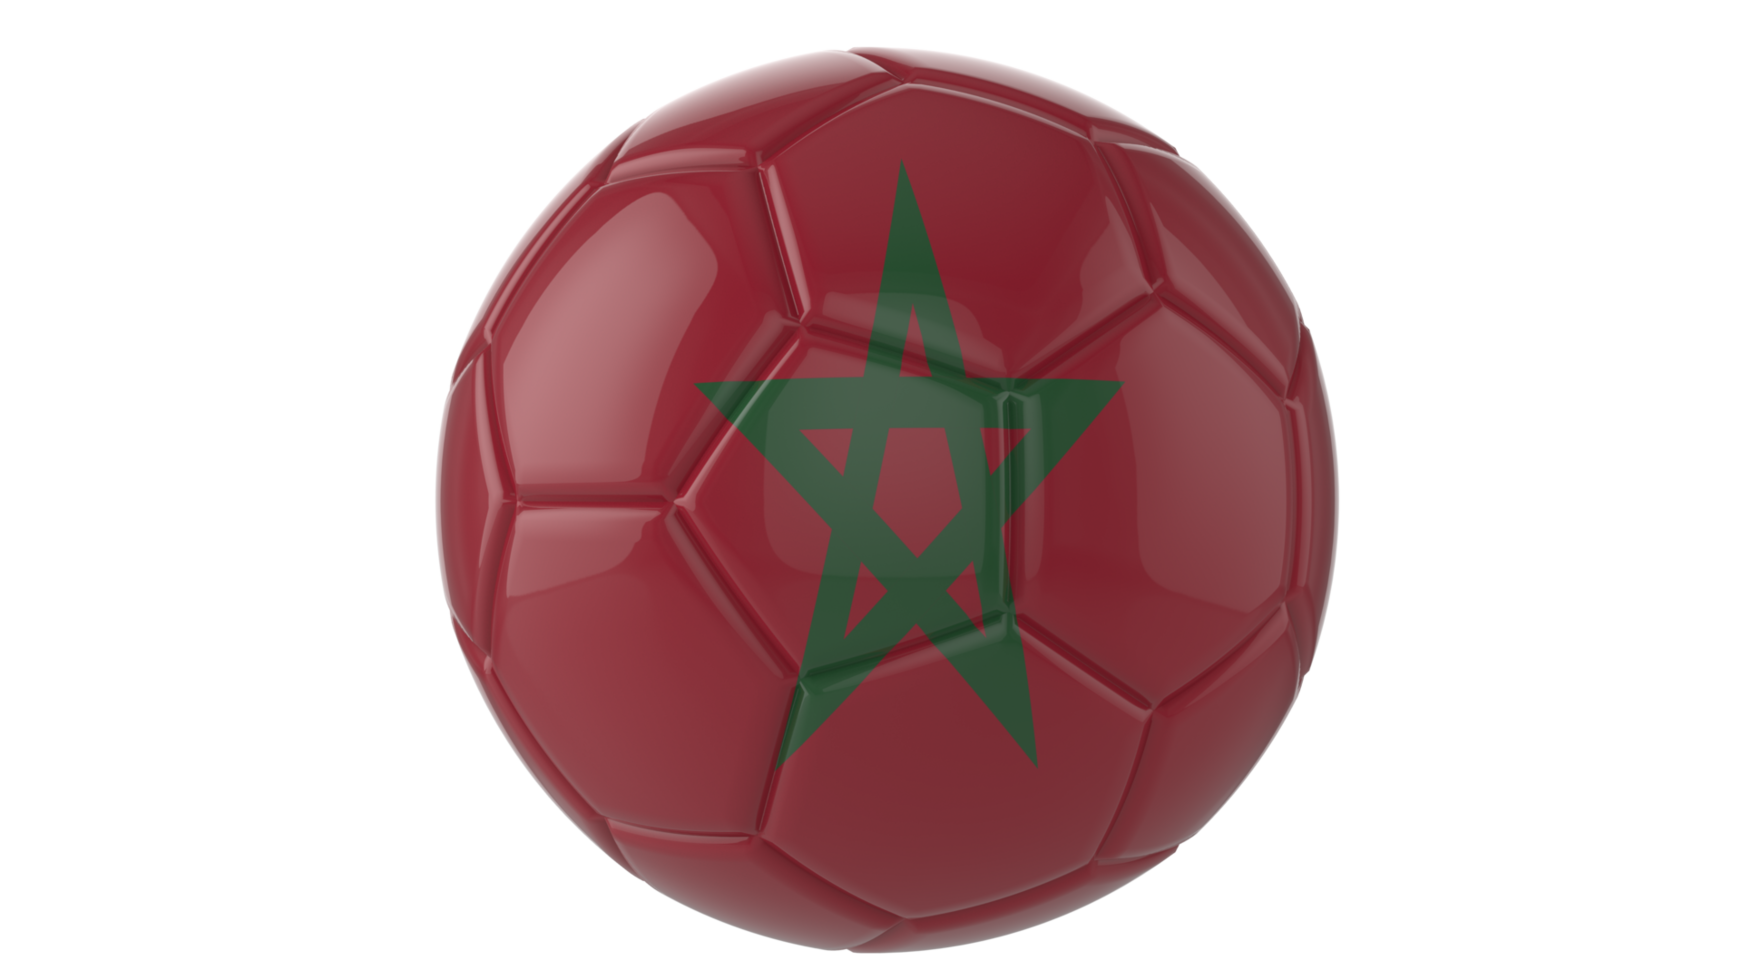 Balón de fútbol realista en 3d con la bandera de marruecos aislado en un fondo png transparente